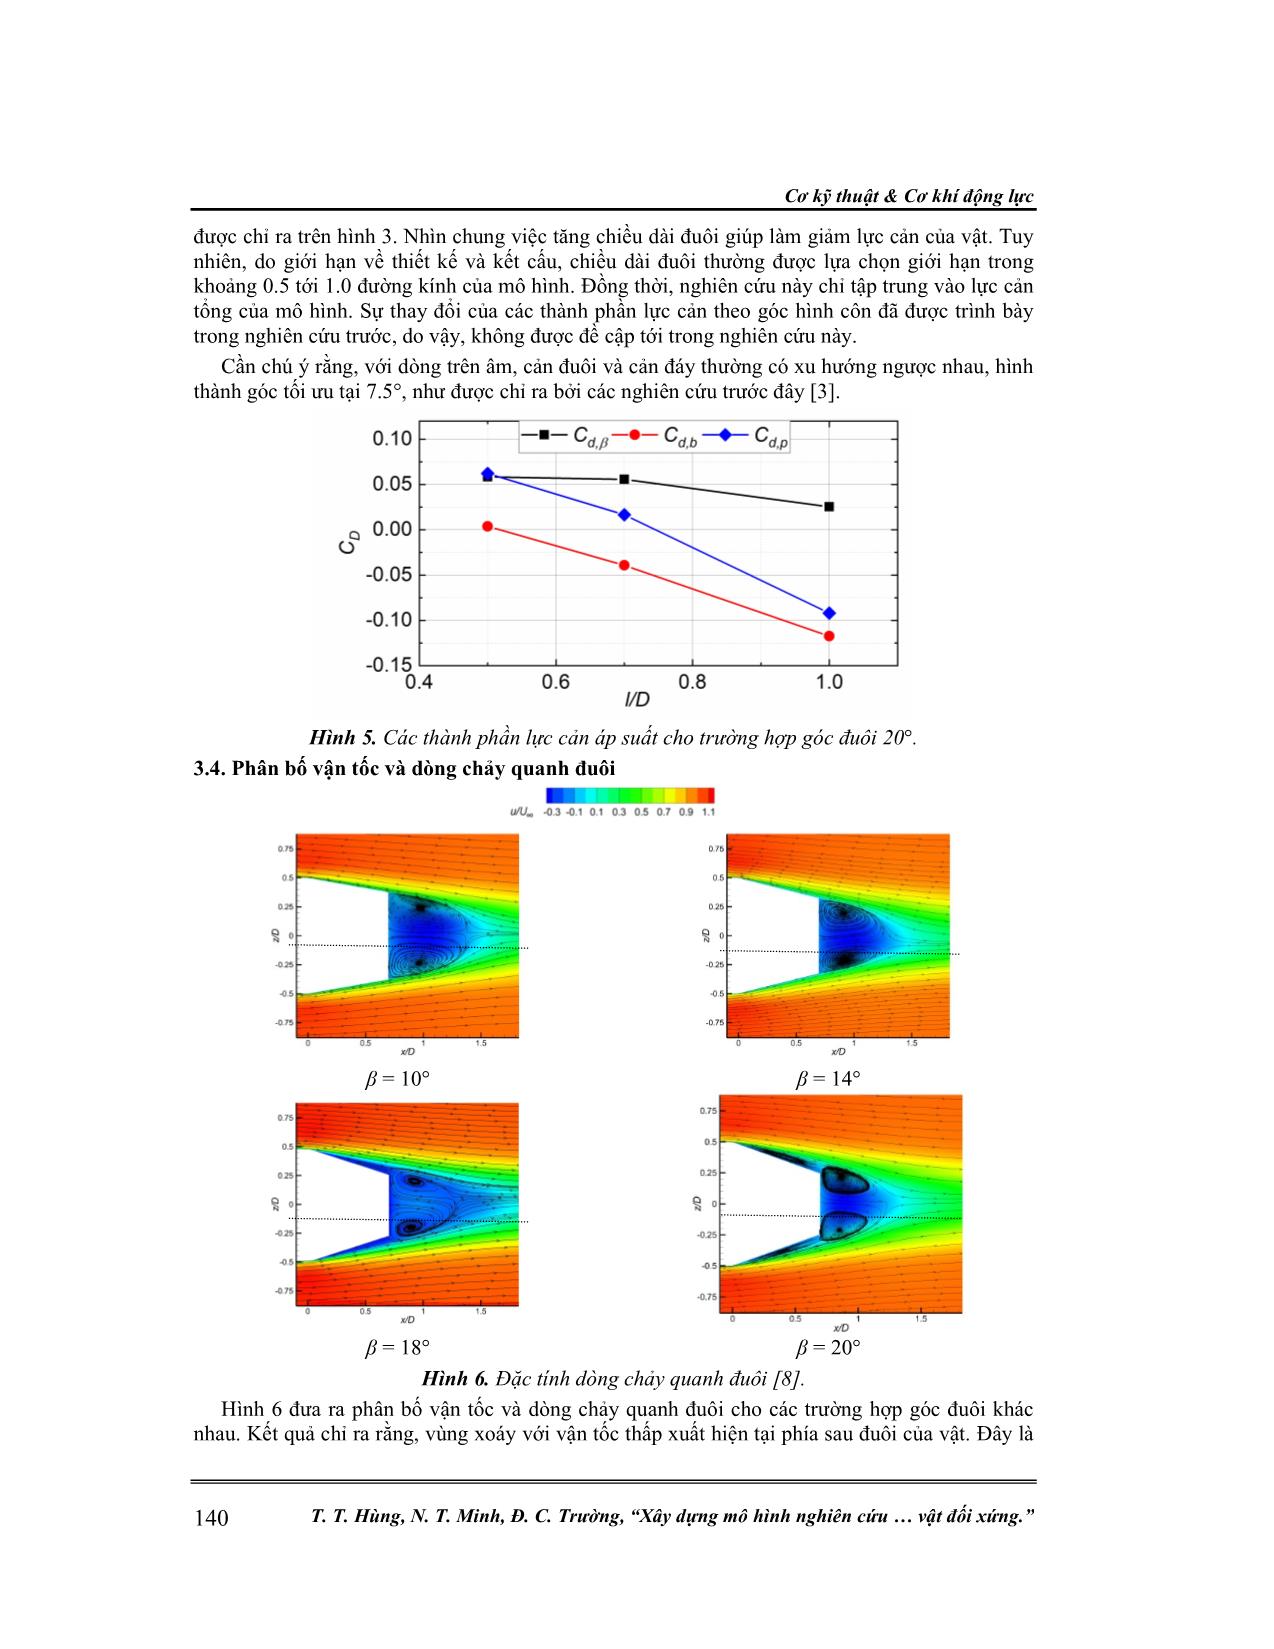 Xây dựng mô hình nghiên cứu ảnh hưởng của đuôi hình côn lên dòng chảy và lực cản của vật đối xứng trang 5